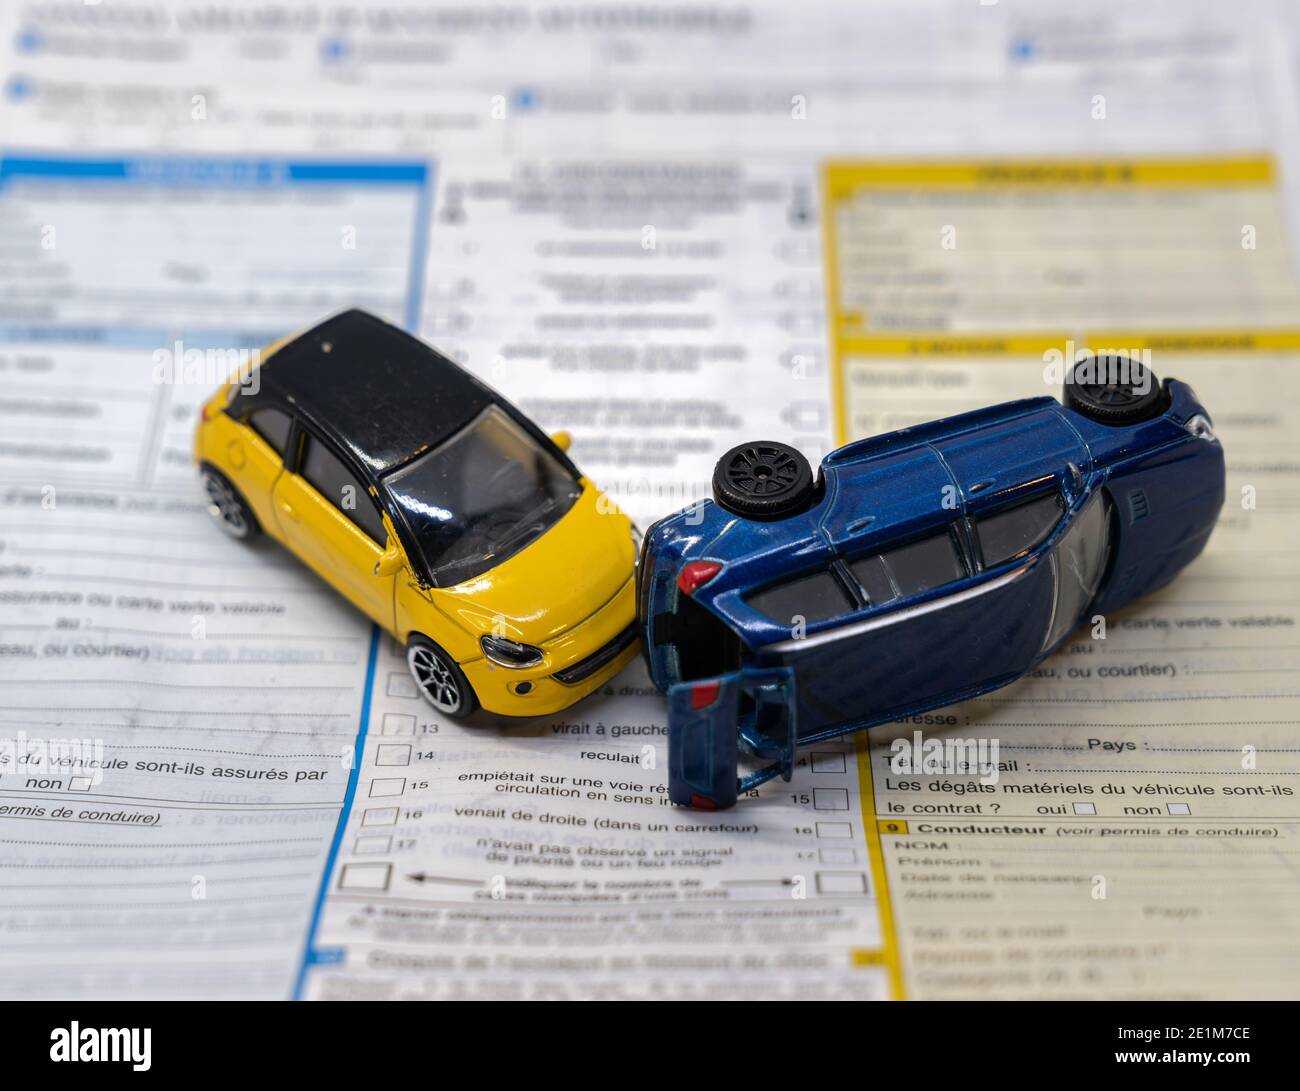 Rapport d'assurance accident de voitures - miniature Toys illustration Banque D'Images